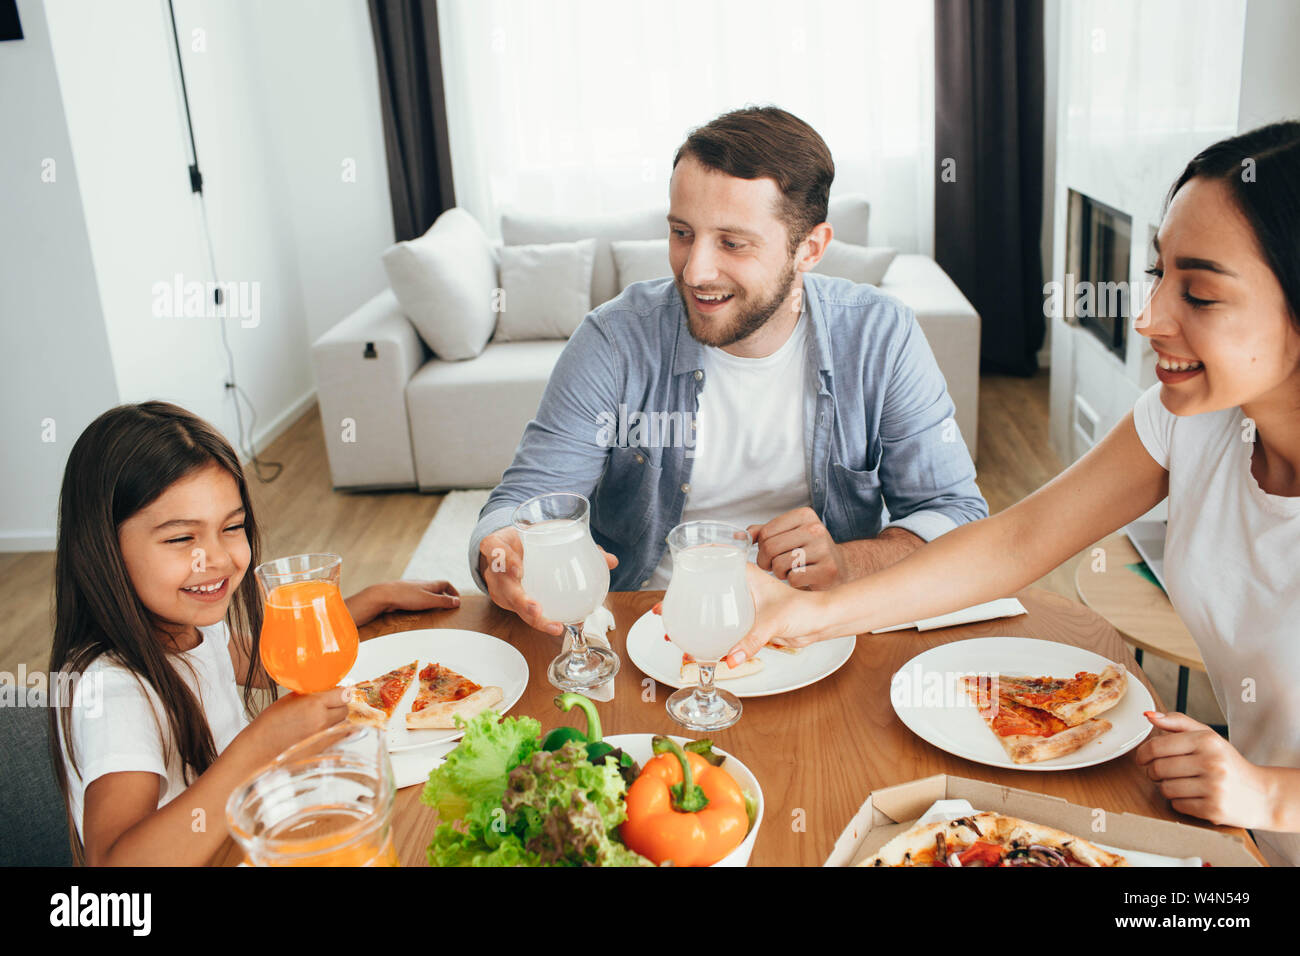 Familie, Mutter, Vater und Tochter beim Essen. Essen essen hausgemachte Pizza zu Hause Stockfoto